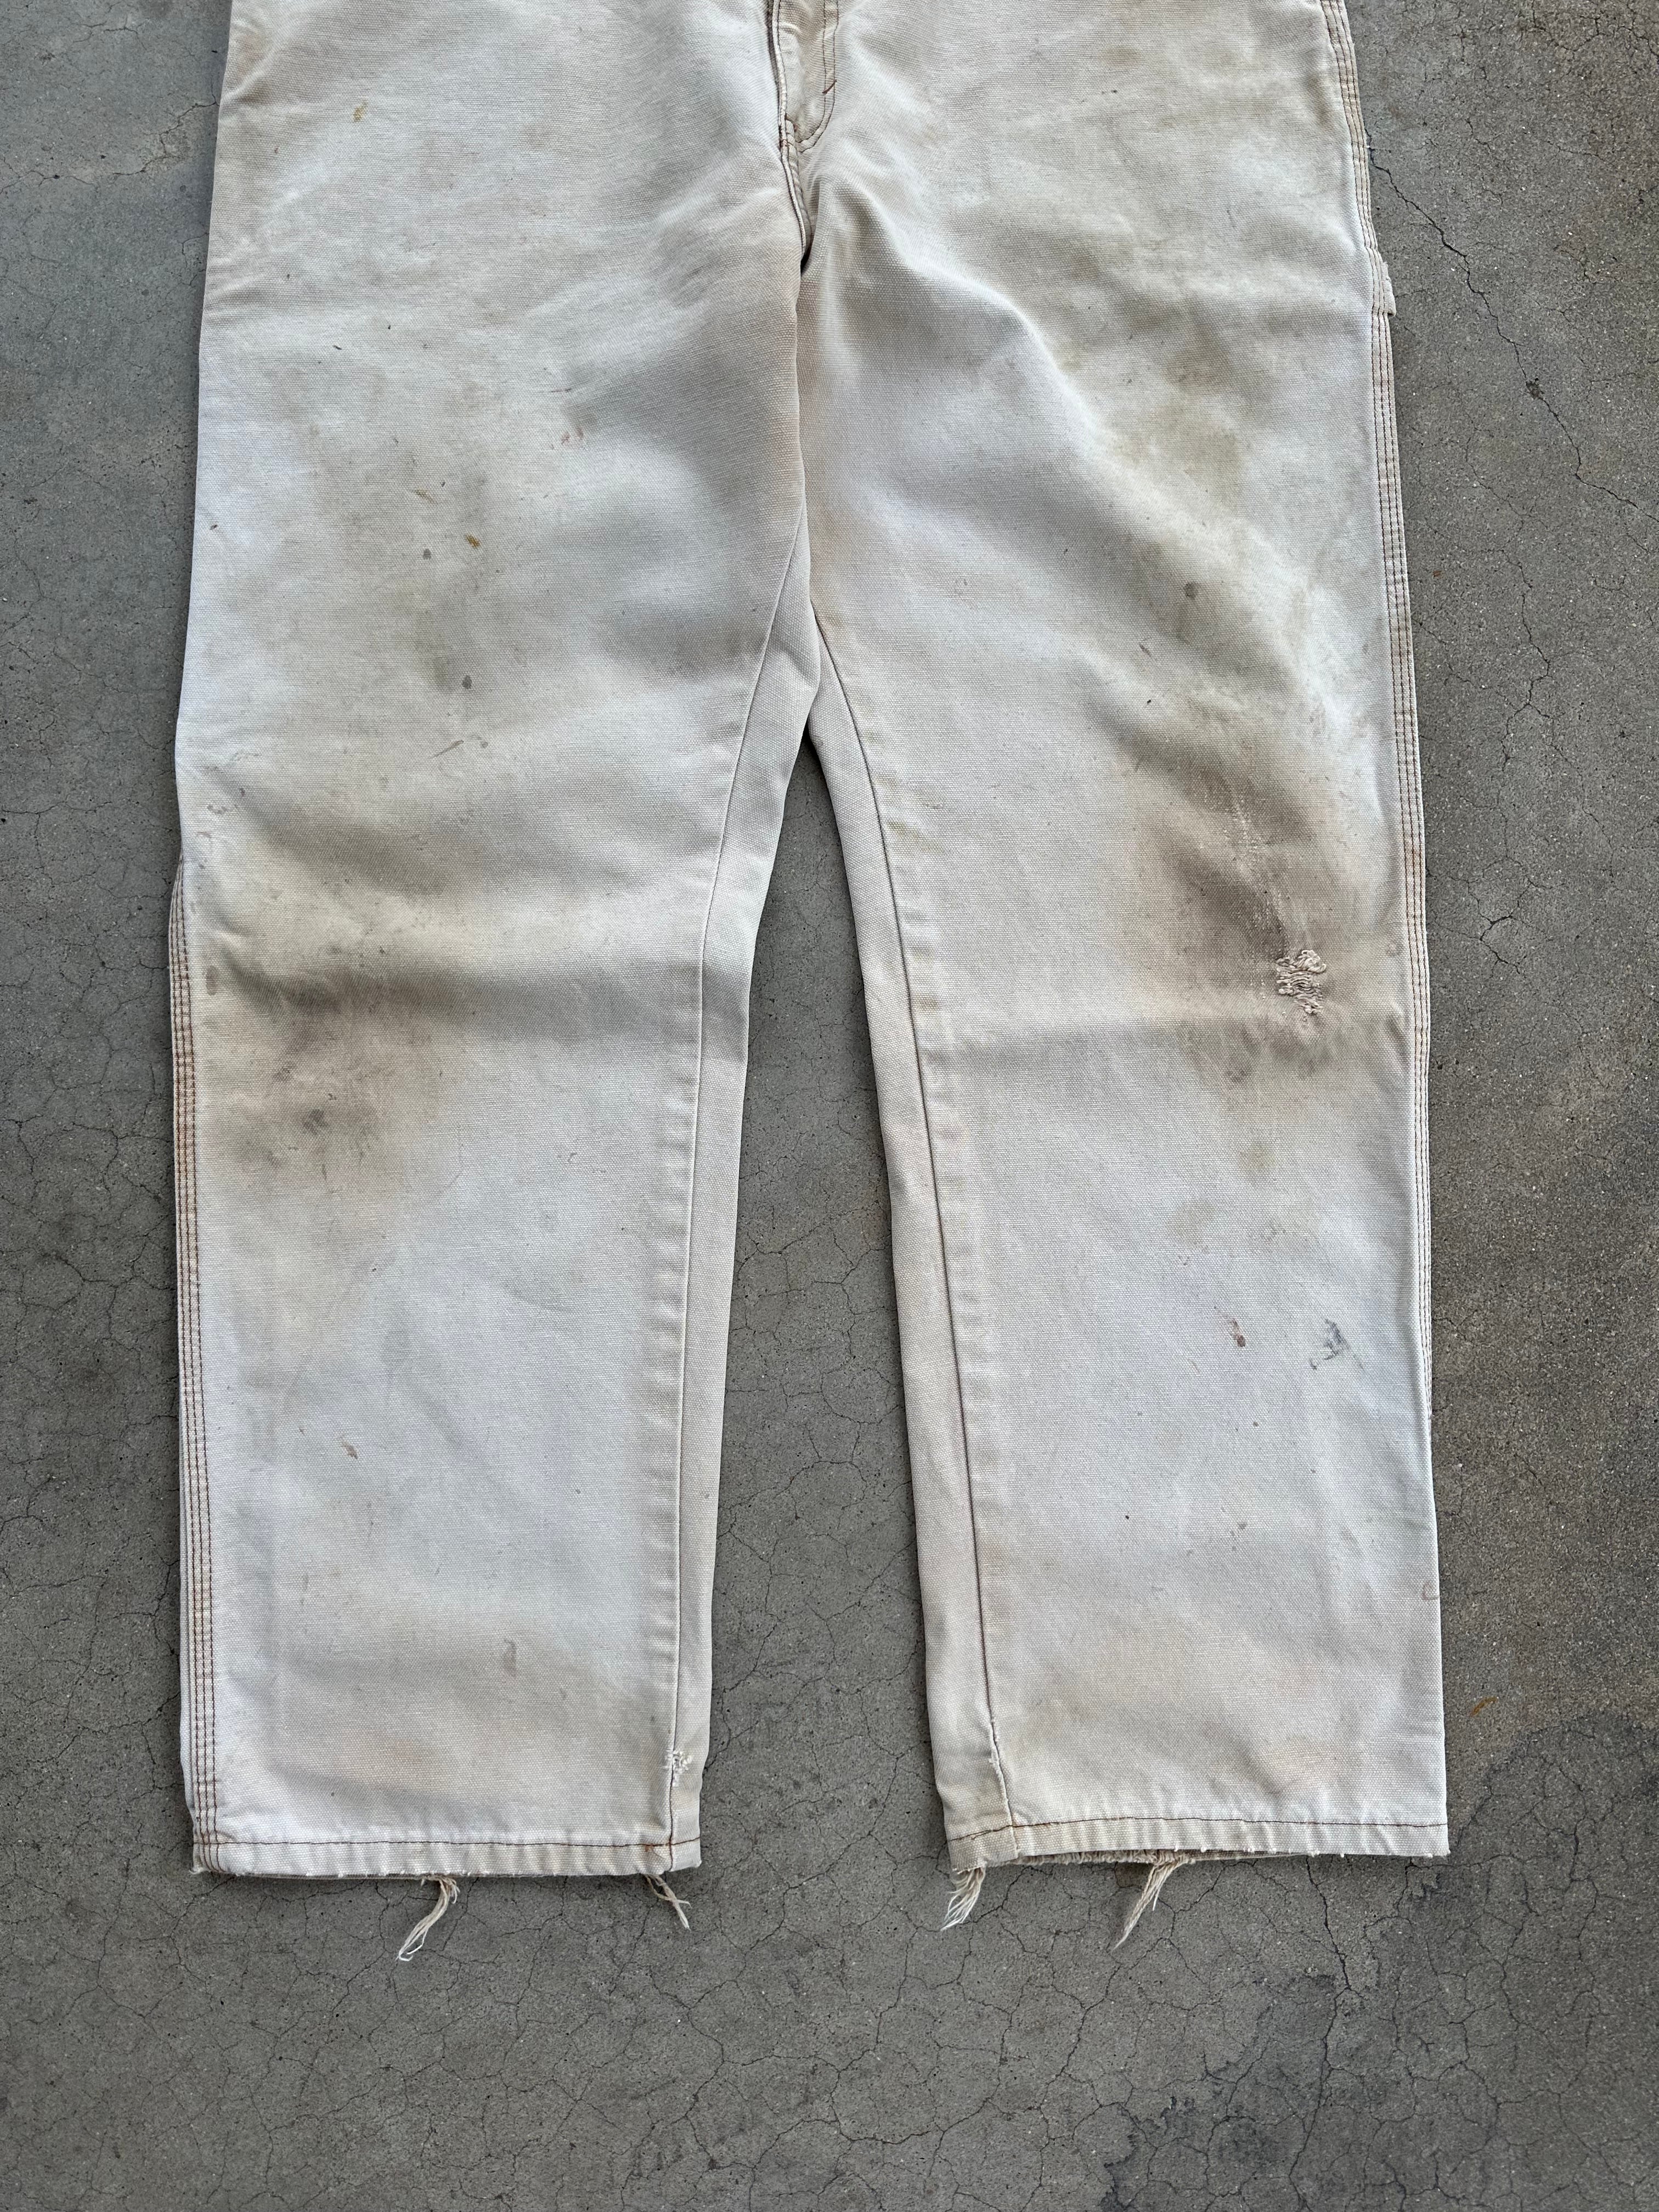 Vintage Faded/Worn Dickies Carpenter Pants (37"x29.5")